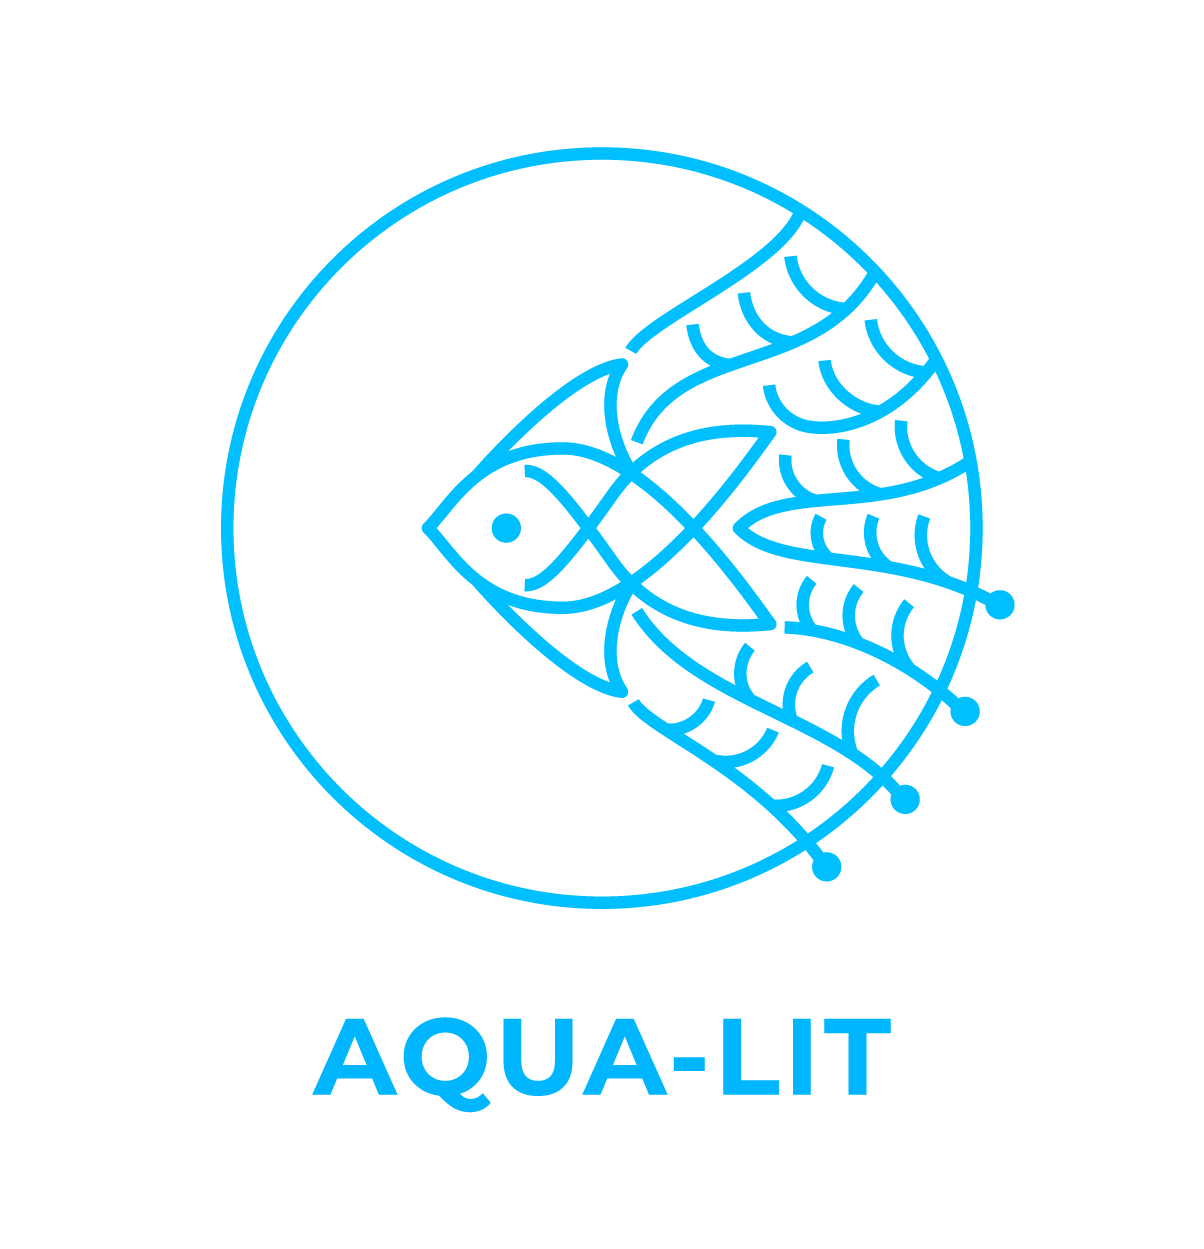 AquaLit